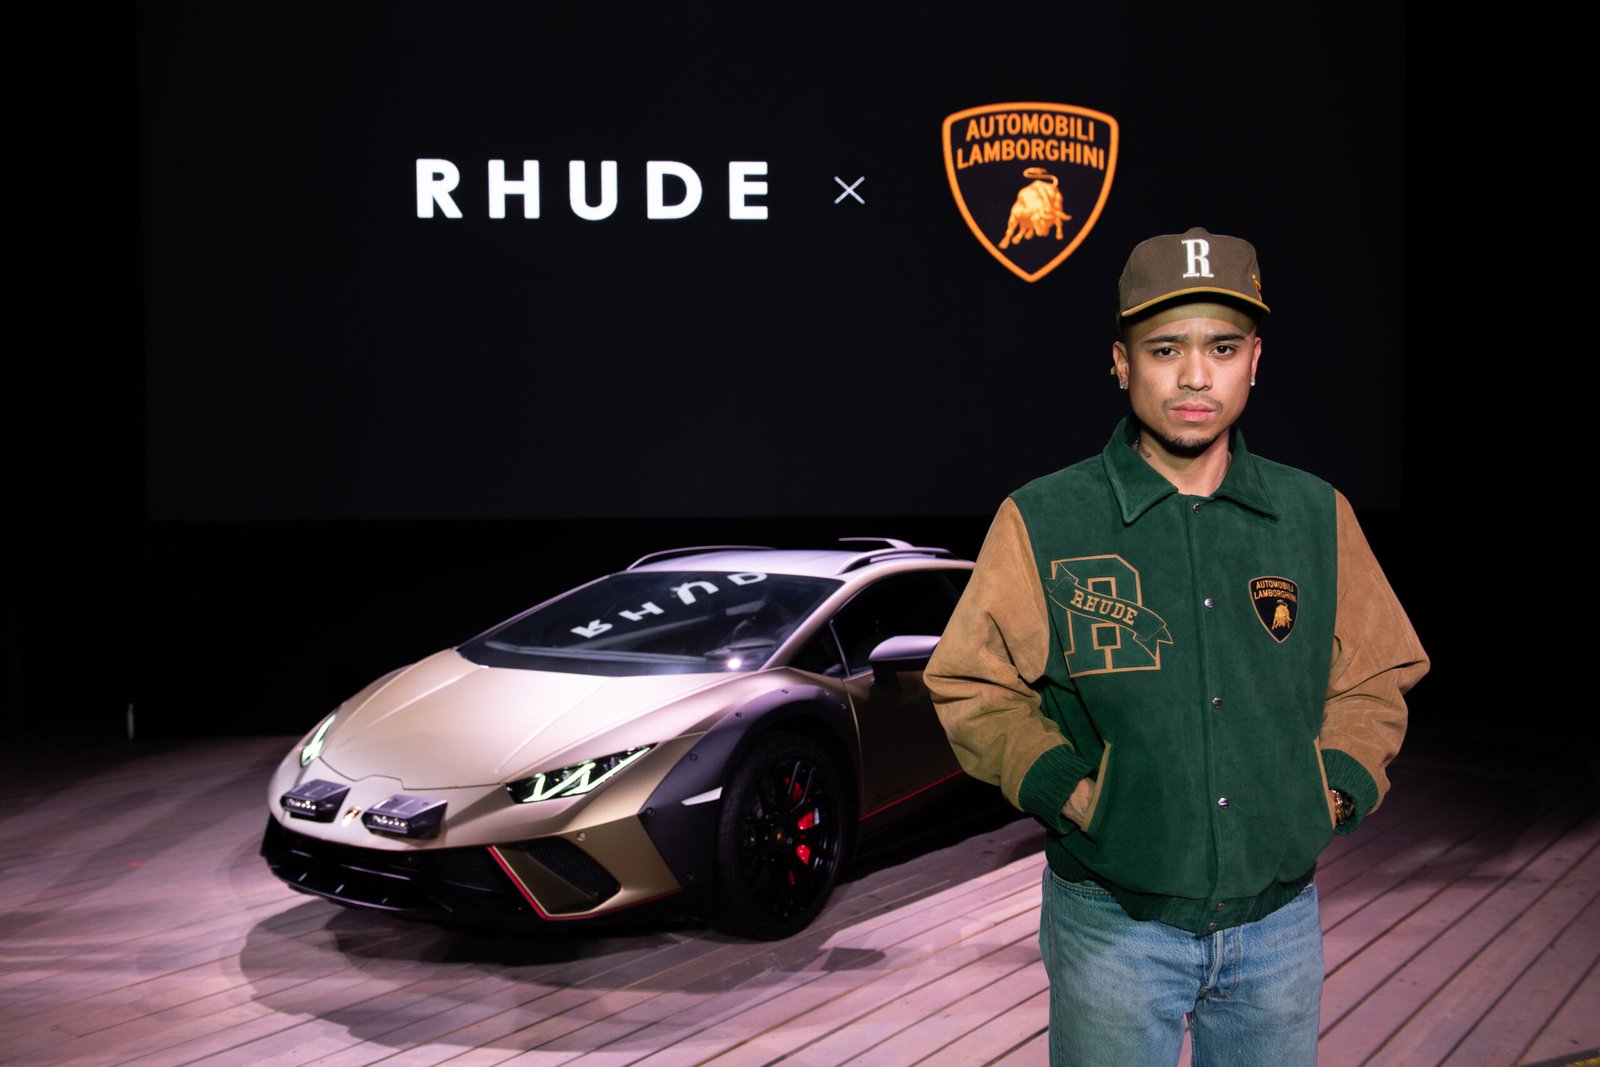 Automobili Lamborghini and Rhude release collaboration teasers